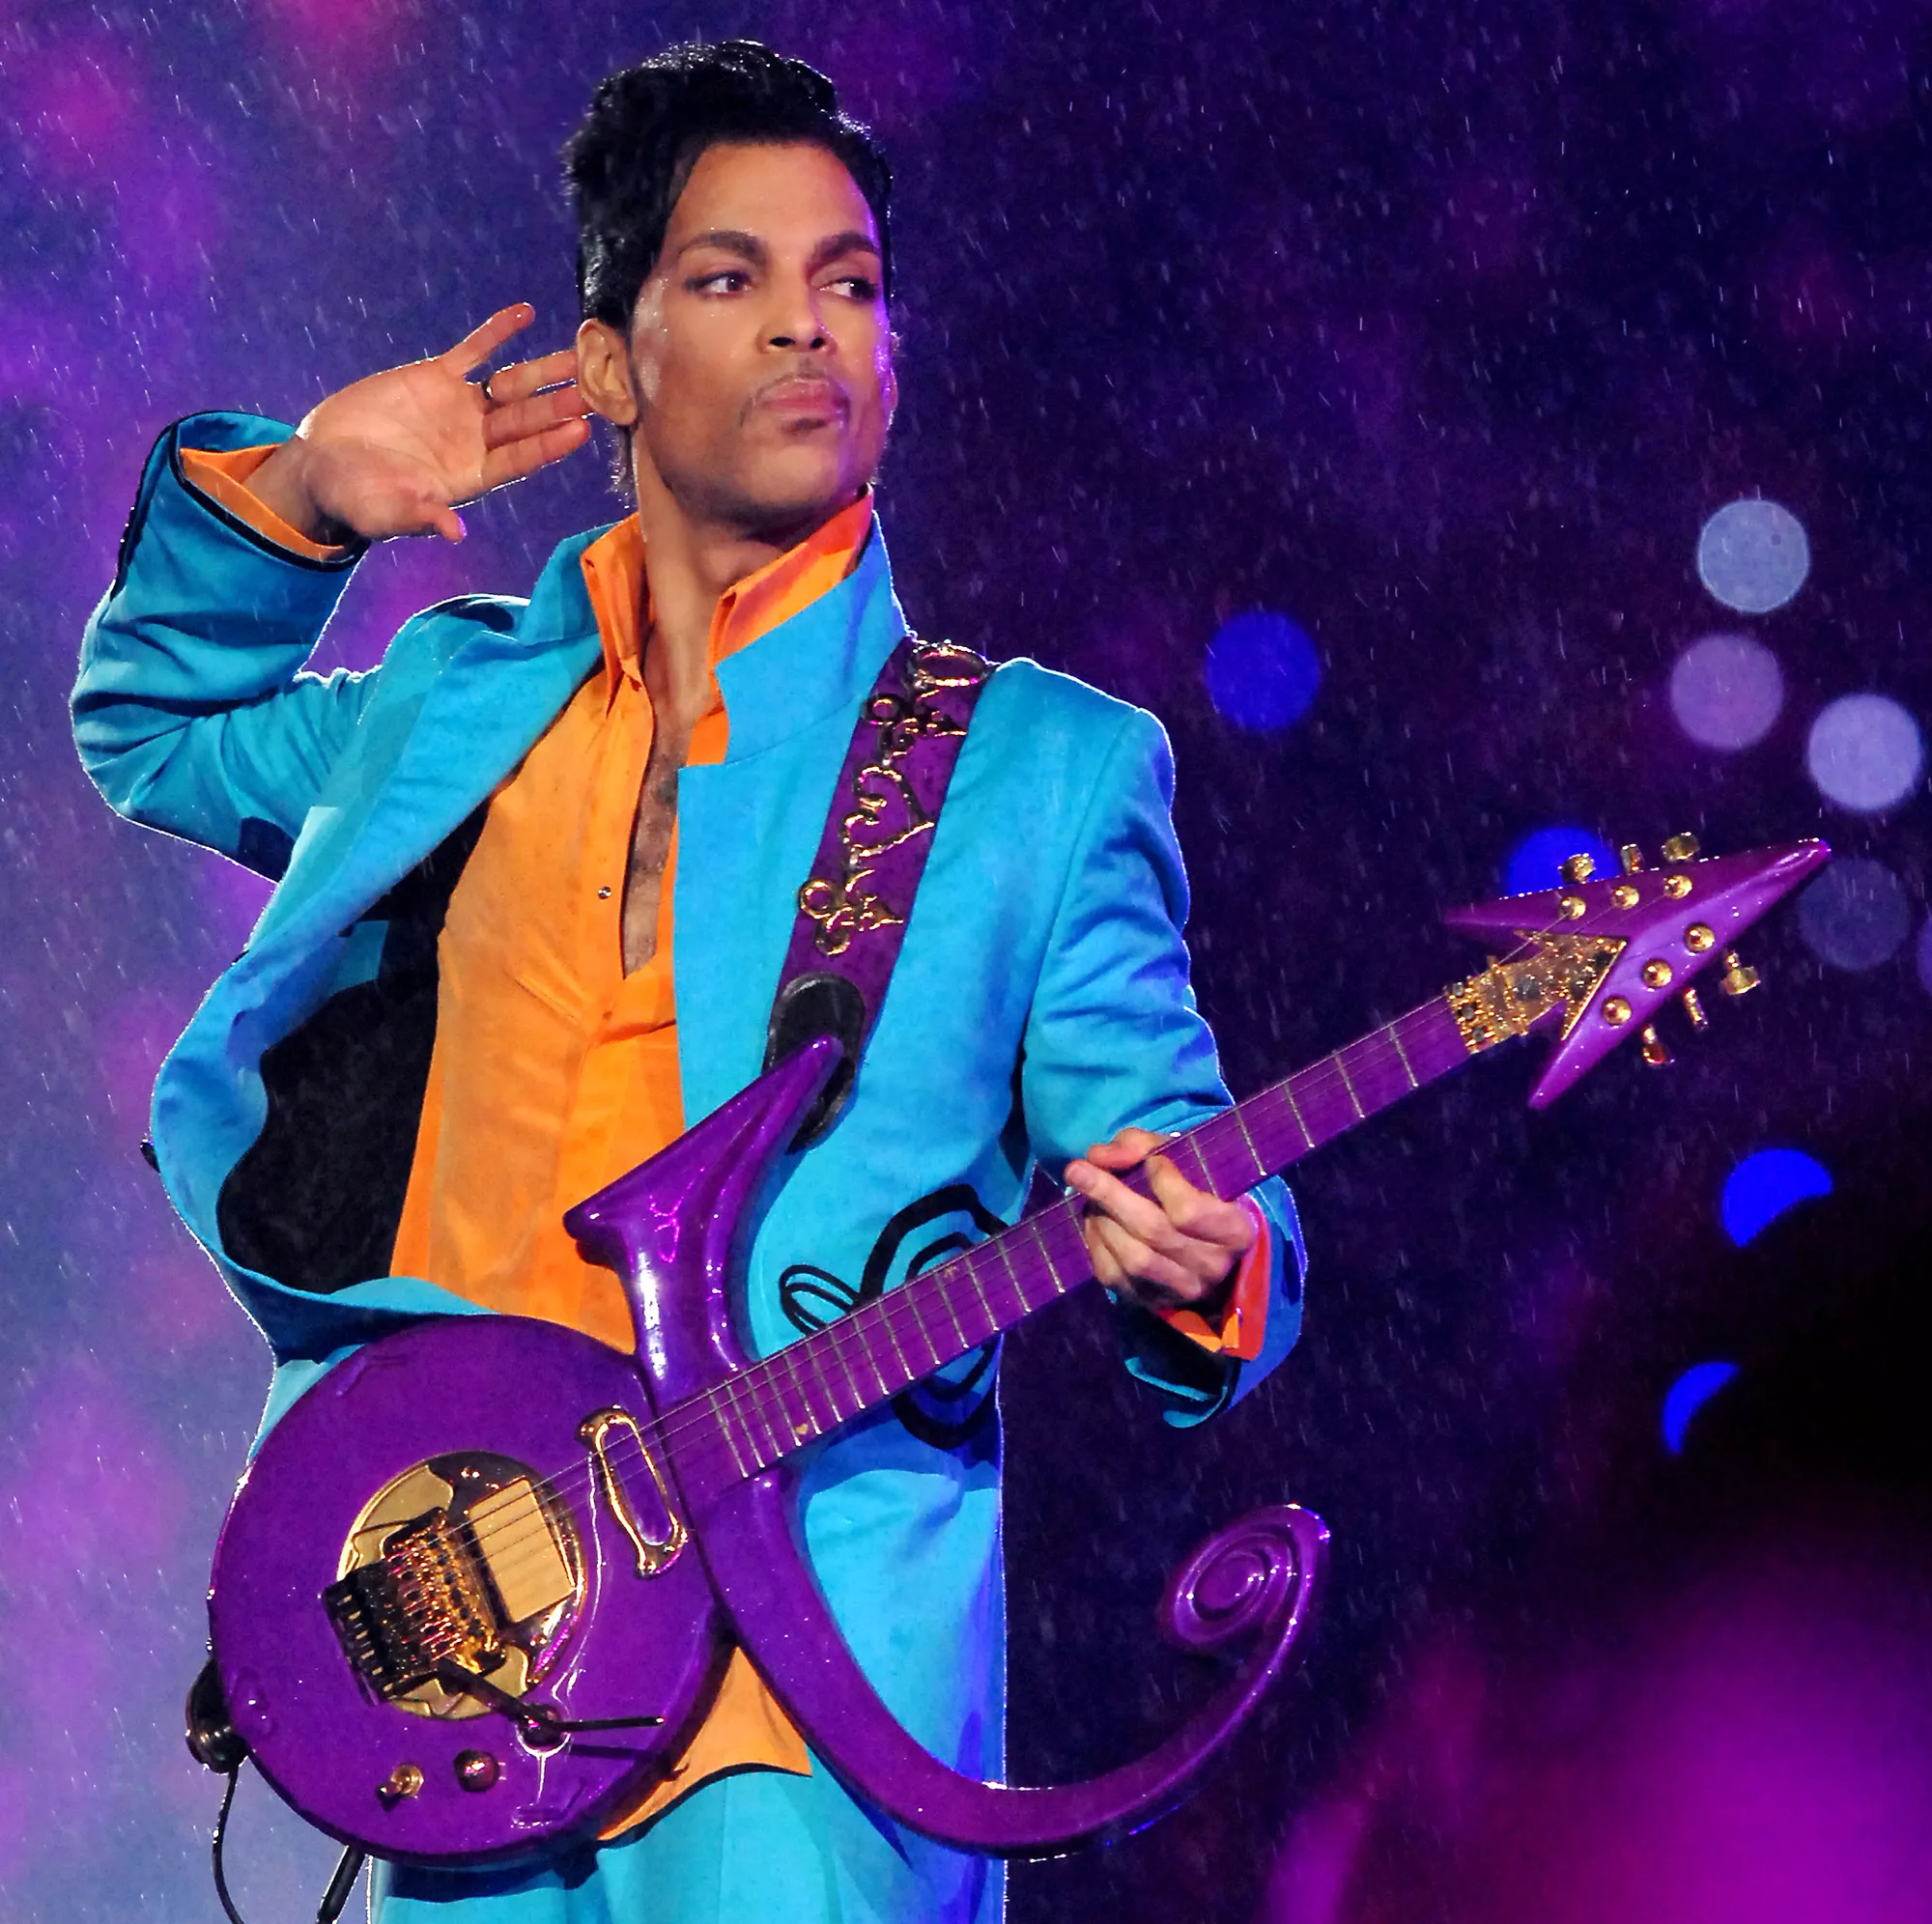 Prince-dokumentar på vej til Netflix